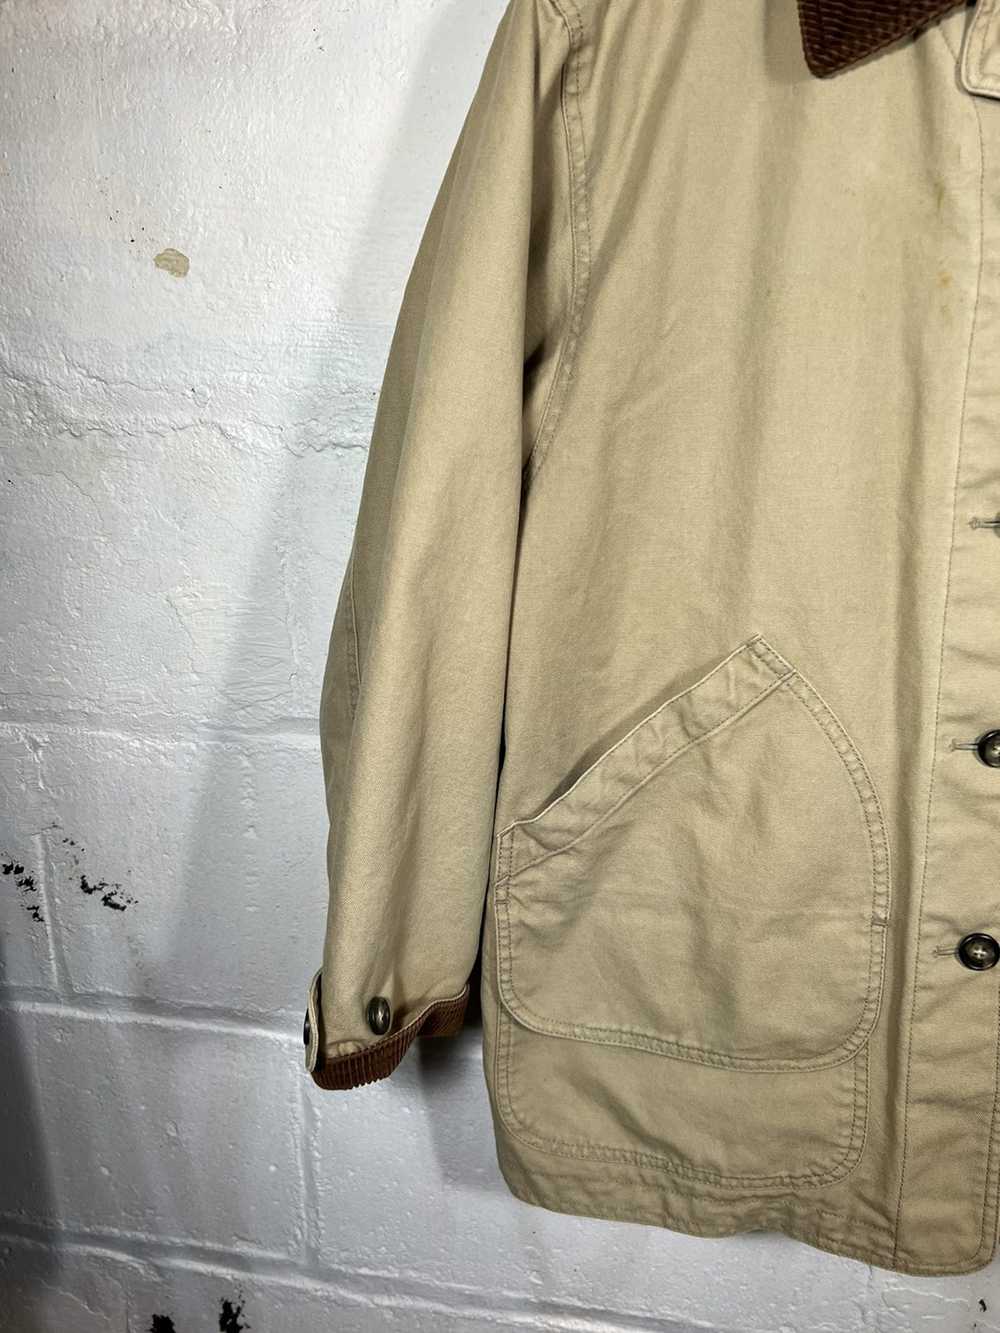 Vintage Vintage Plaid Lined Chore Jacket - image 4